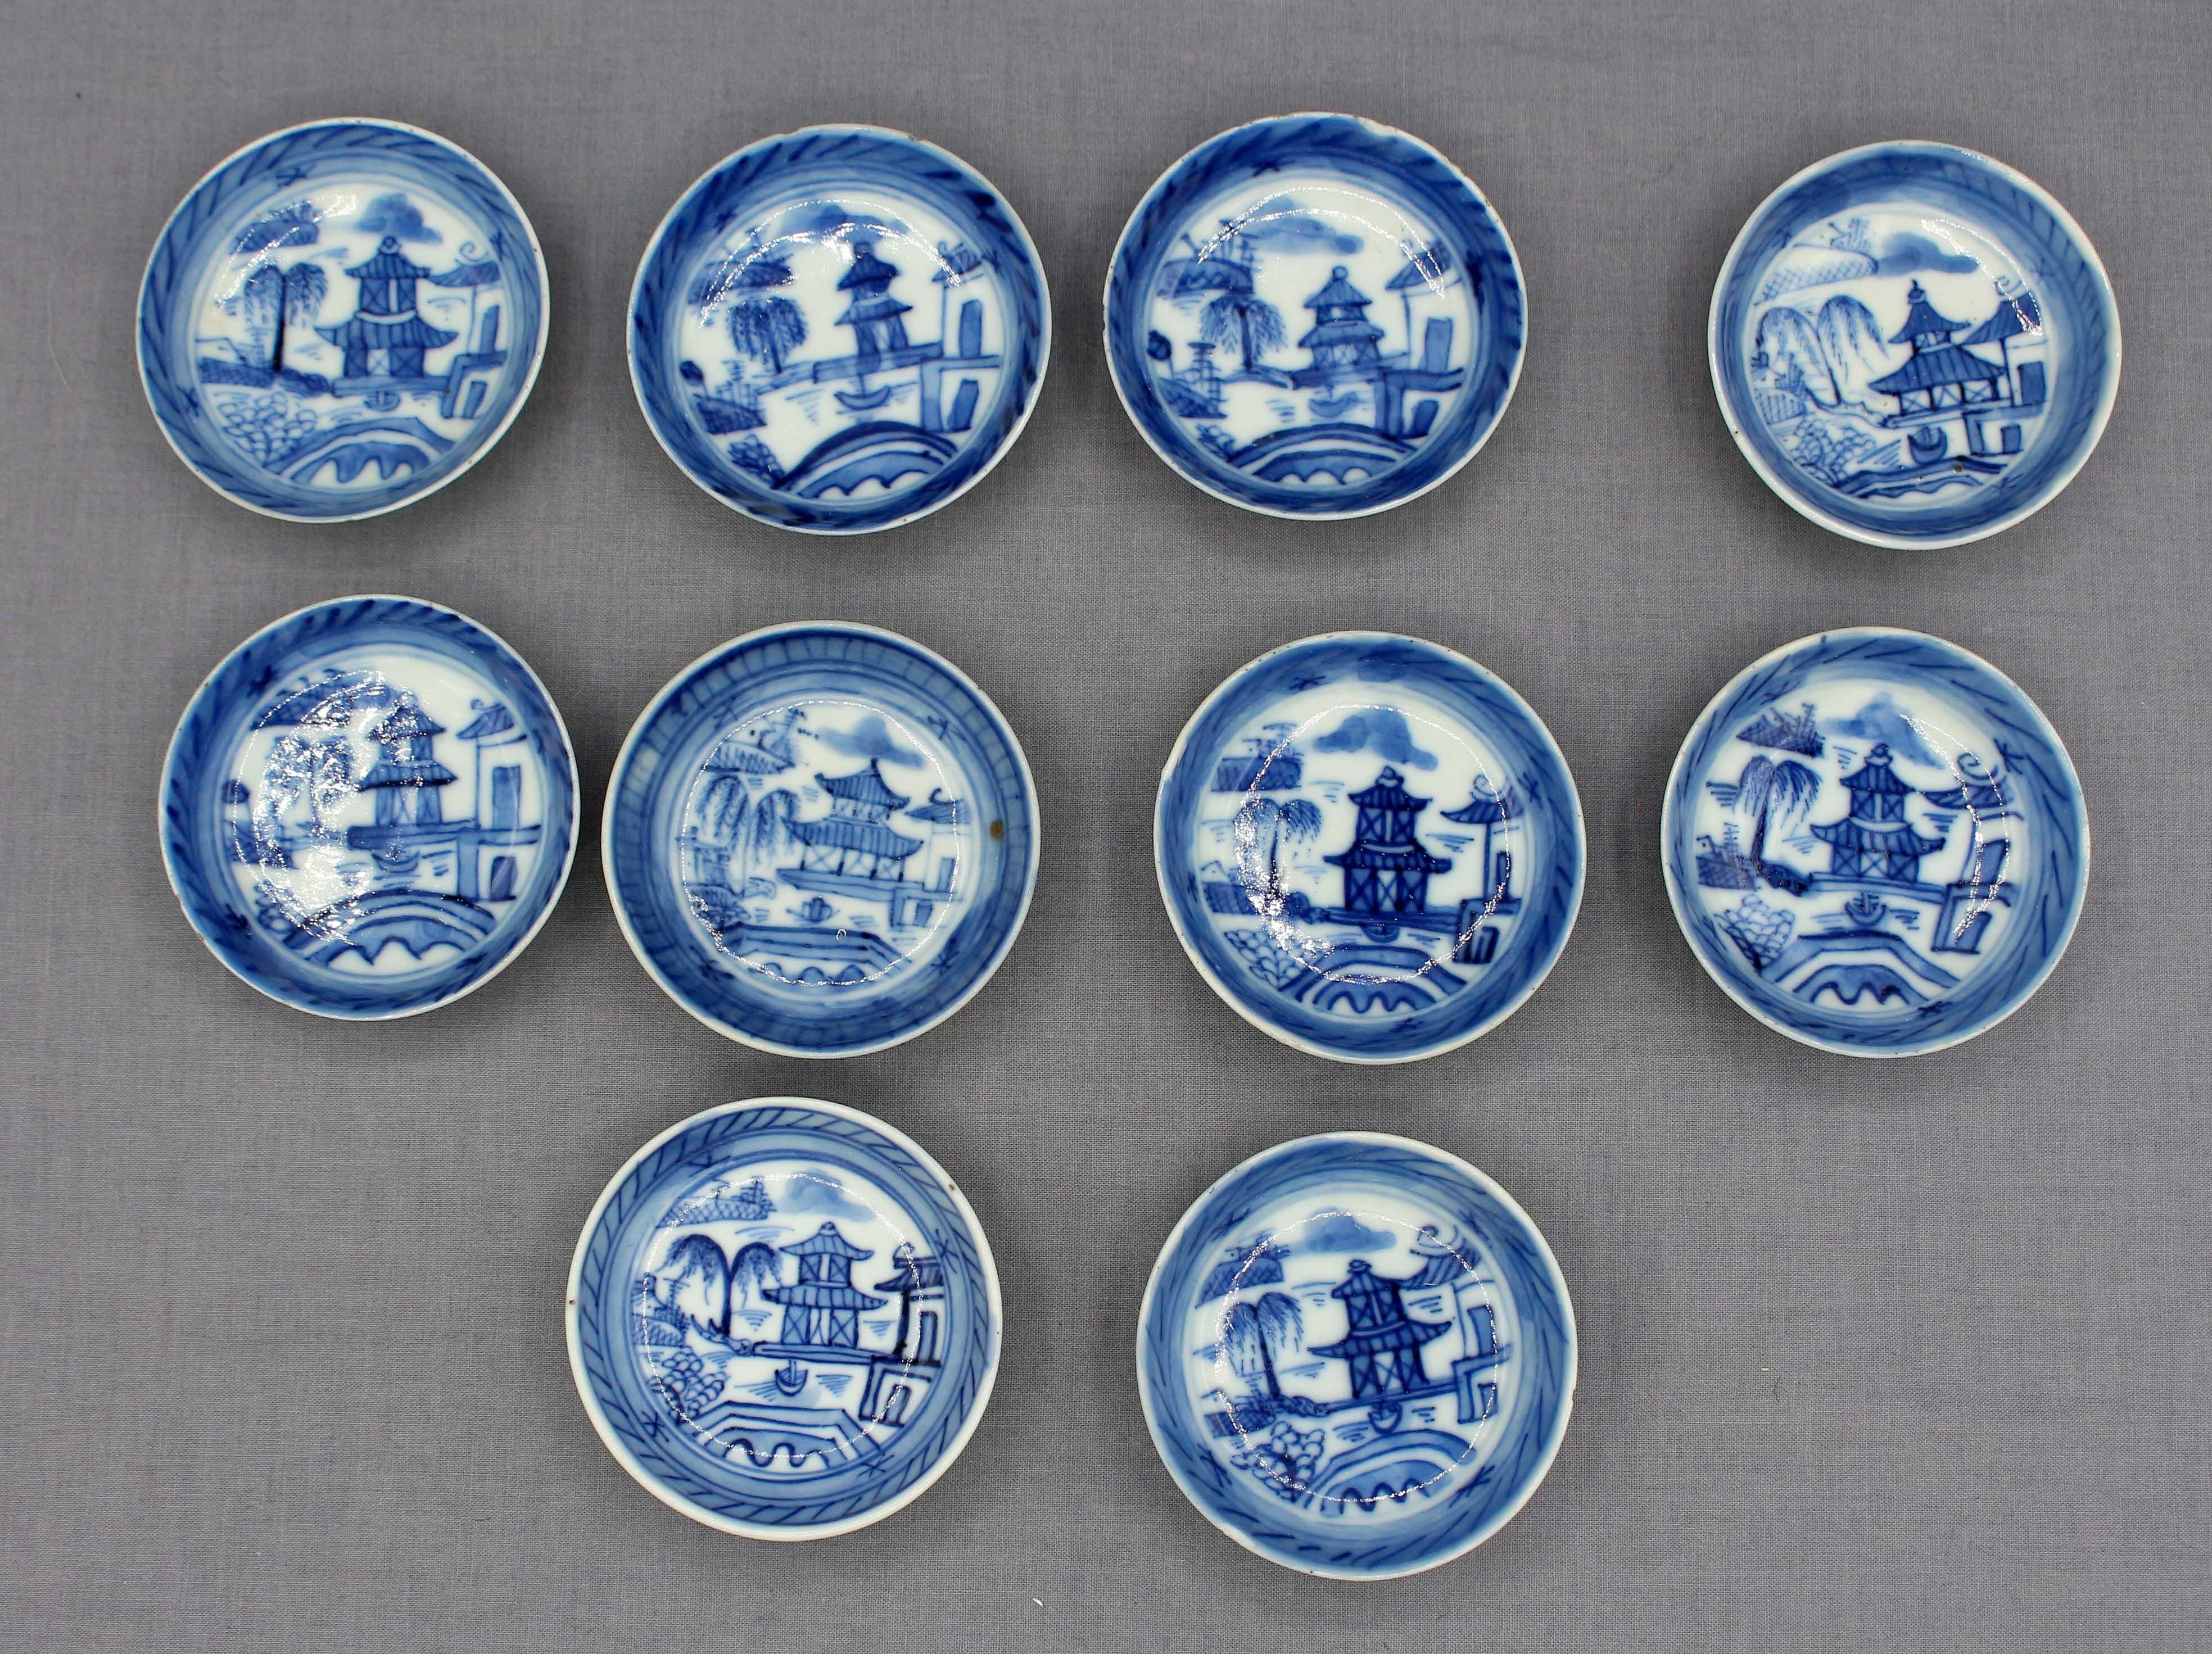 Ensemble de 10 plats à sel en porcelaine du 19e siècle, exportés de Chine. Canton bleu, bleu et blanc. Chips sur quelques uns.
2 3/4